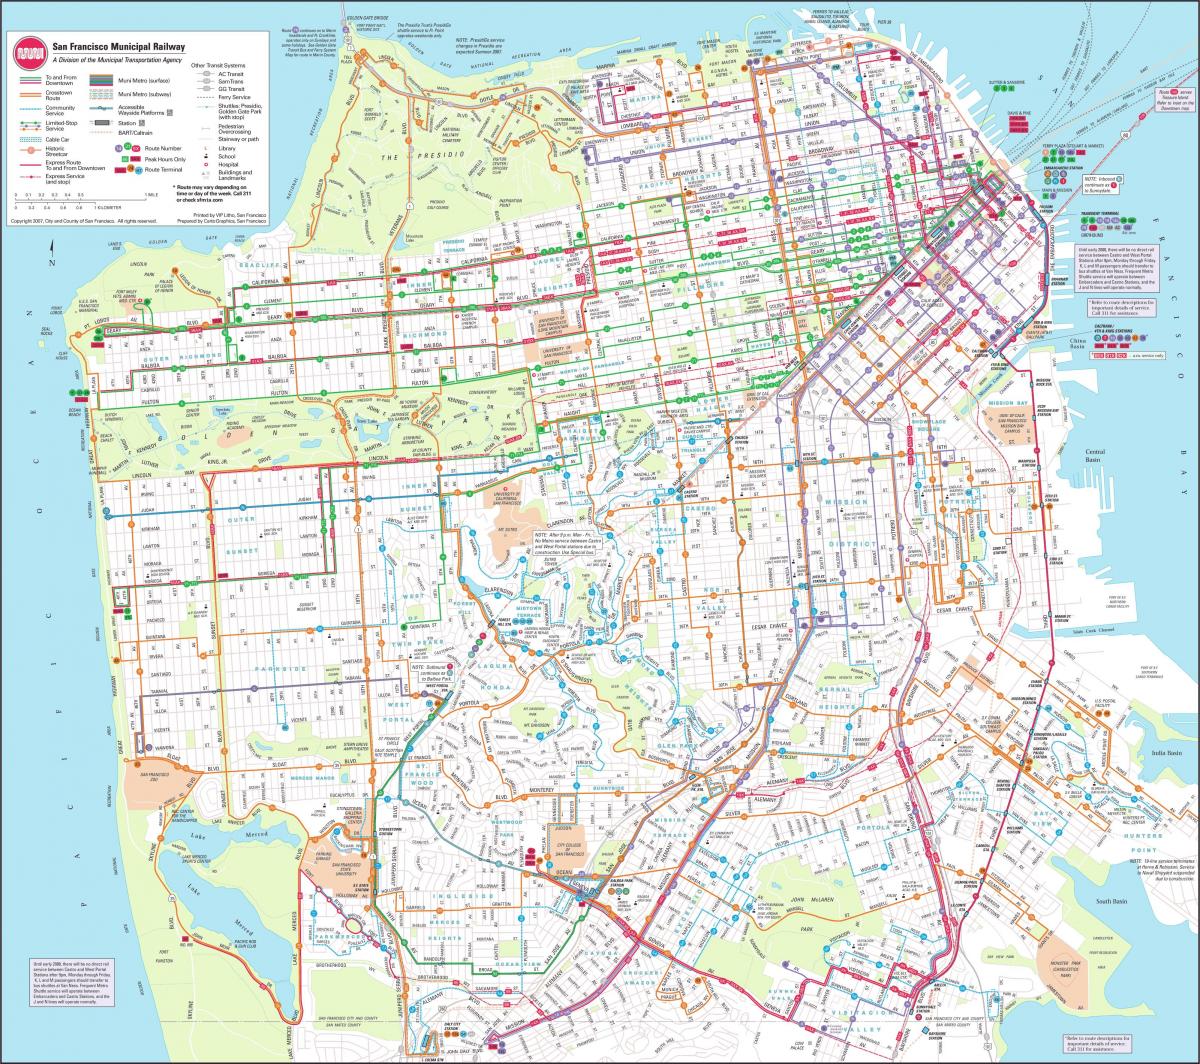 Karta San Franciscu ili gradska željeznica